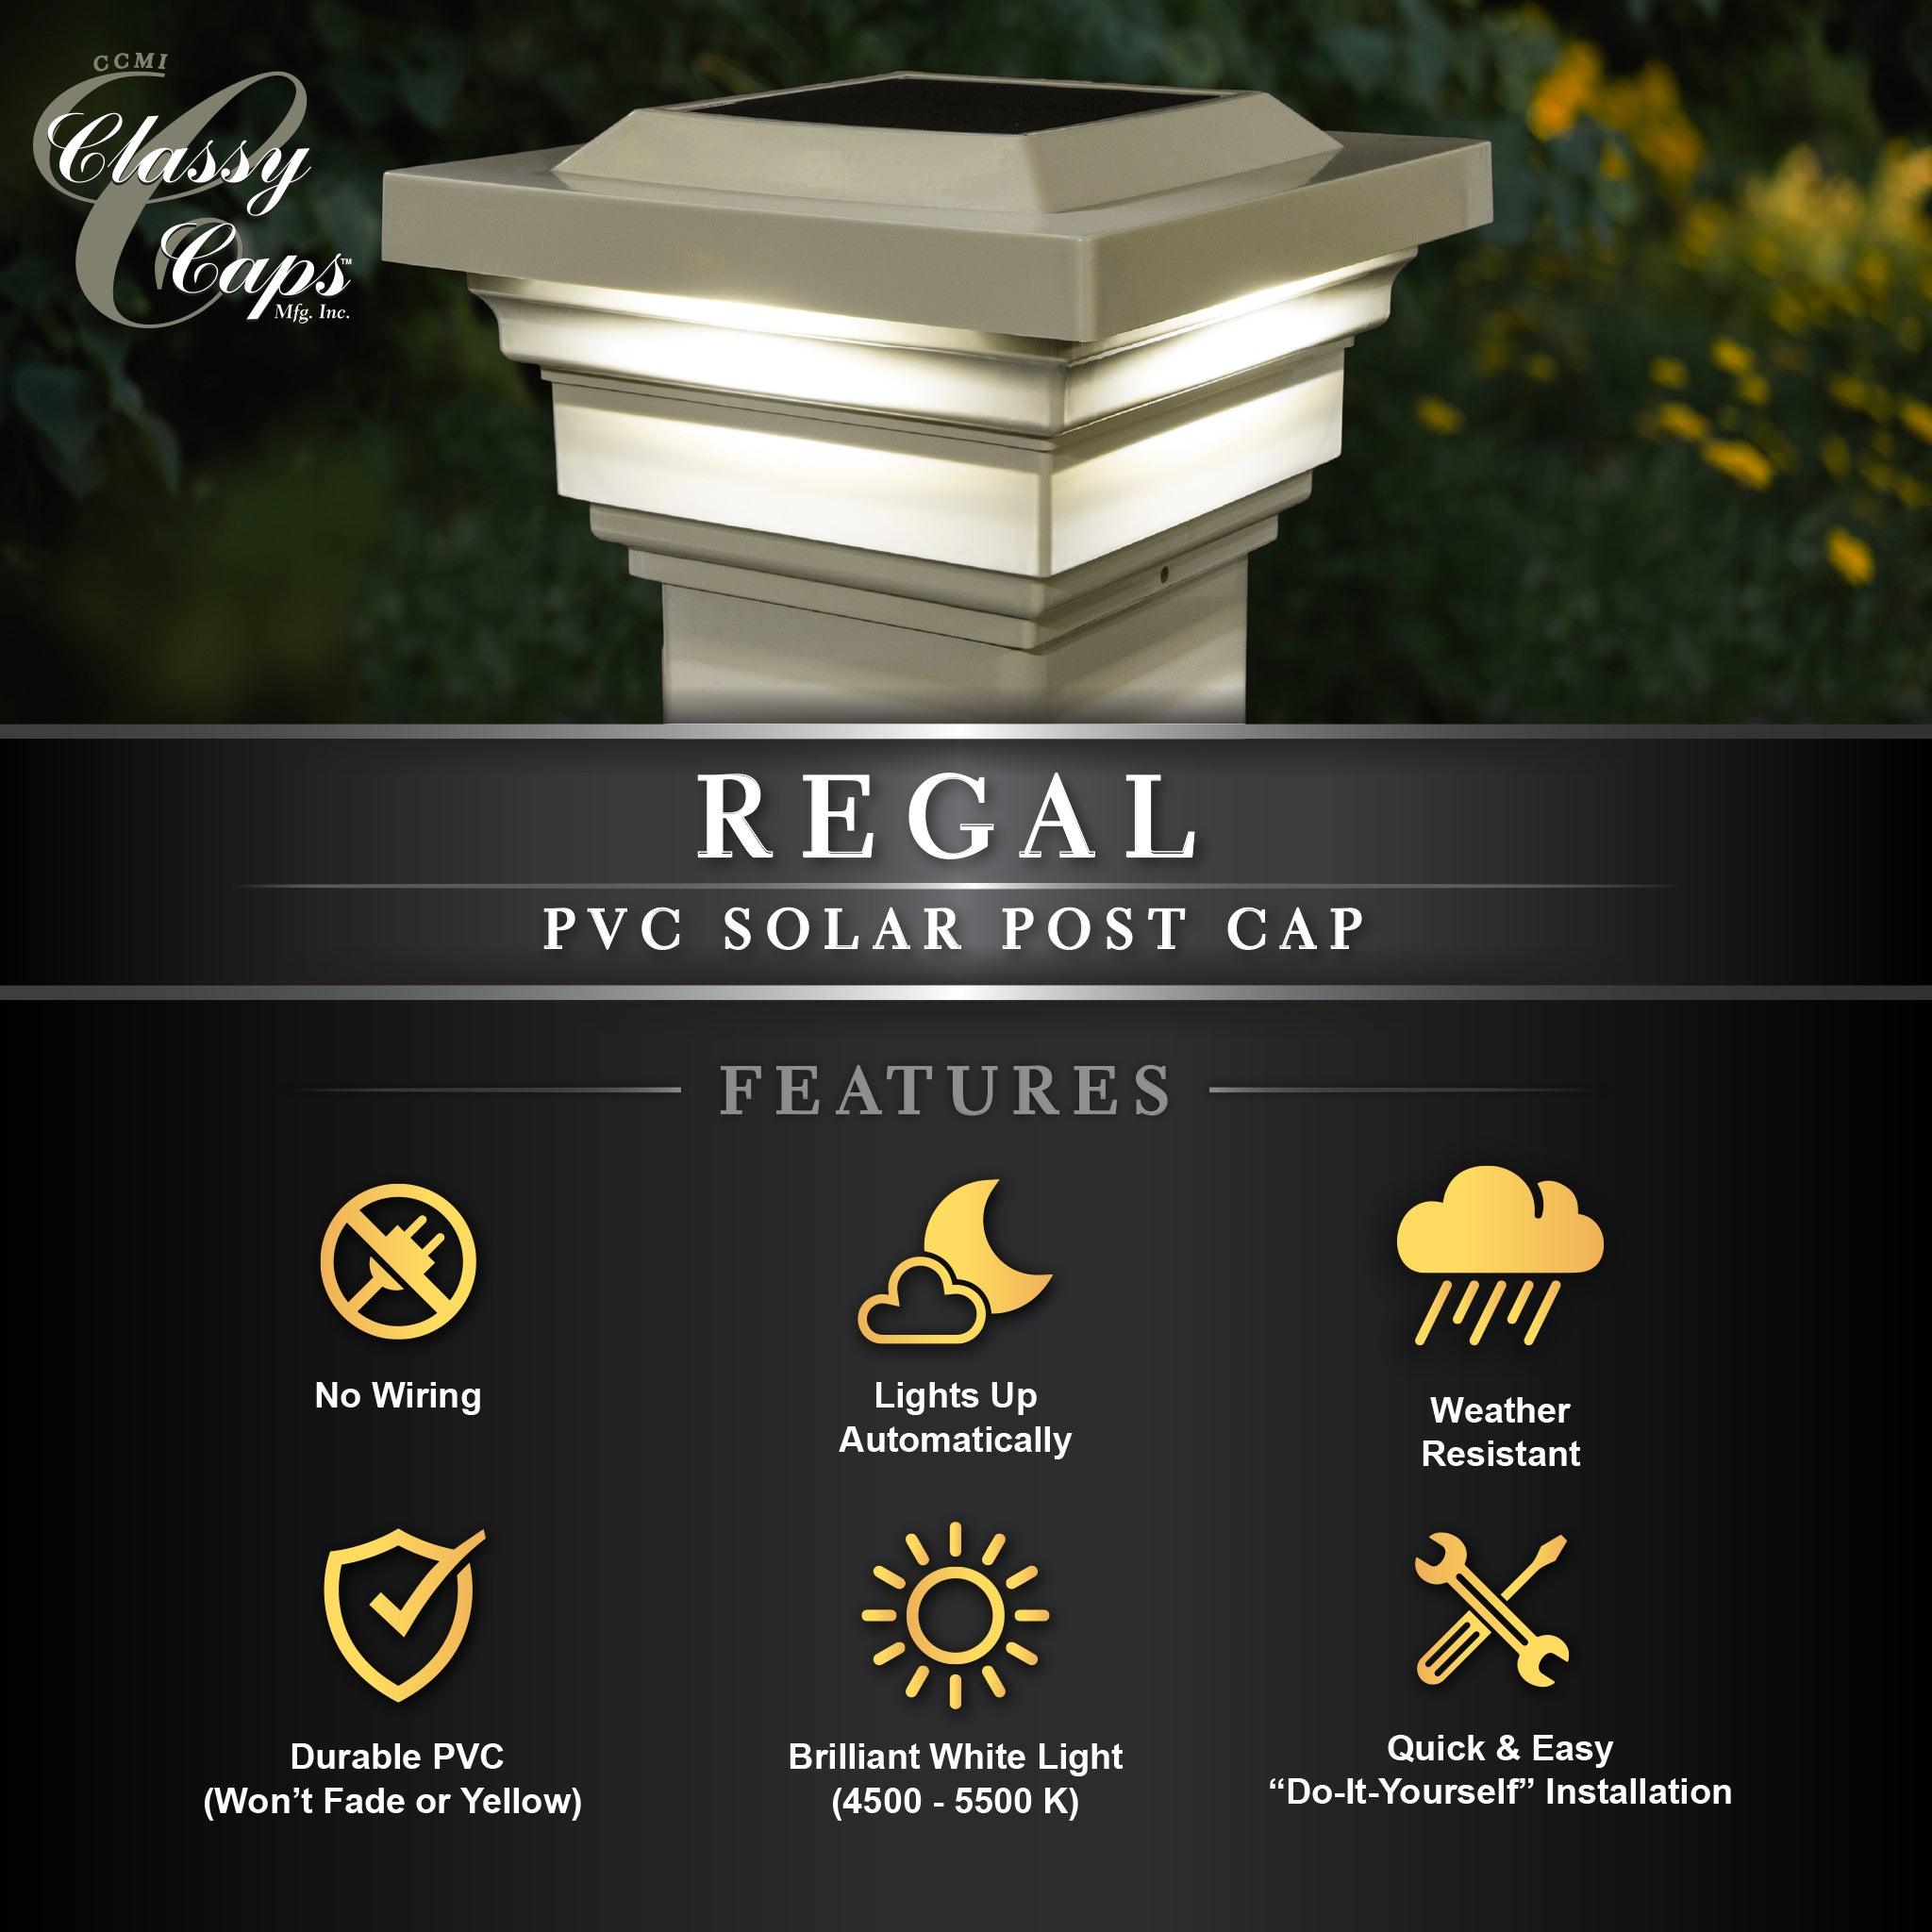 Regal Solar Post Cap - Tan - Classy Caps Mfg. Inc.